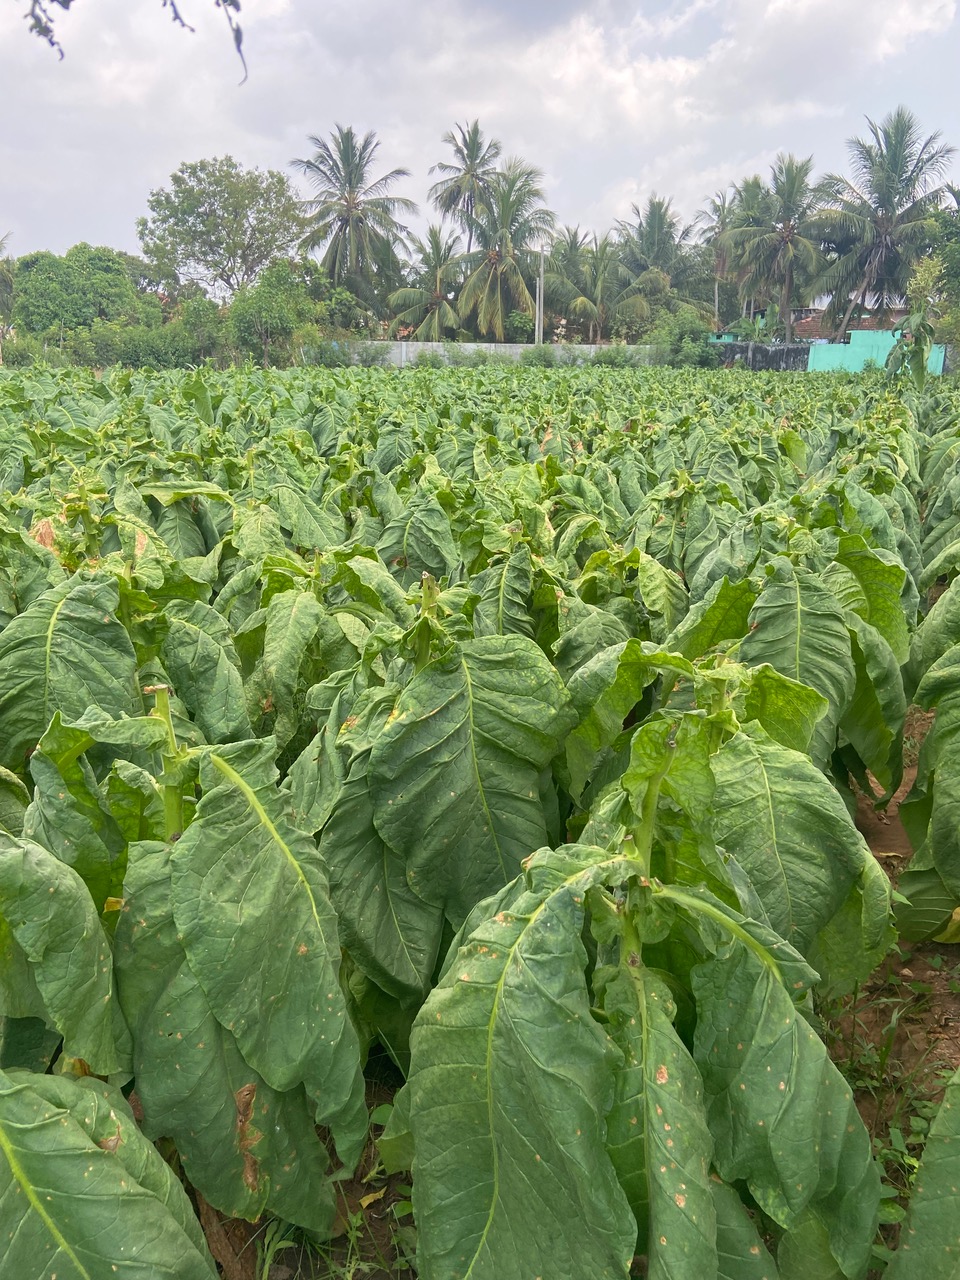 tobacco fields